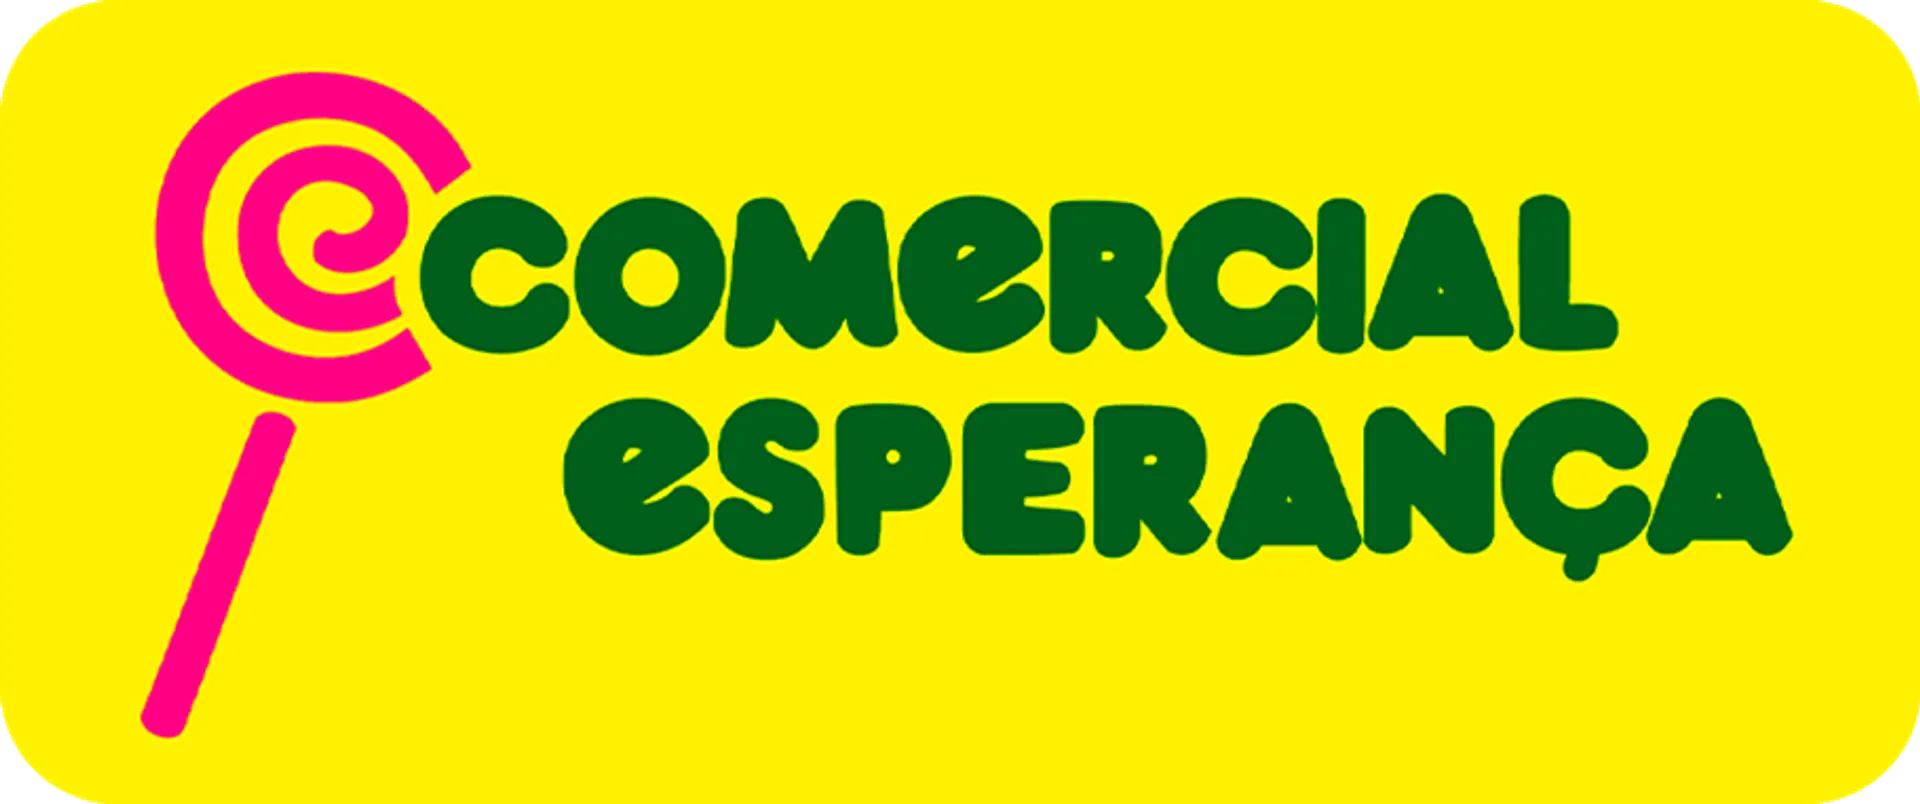 COMERCIAL ESPERANÇA logo